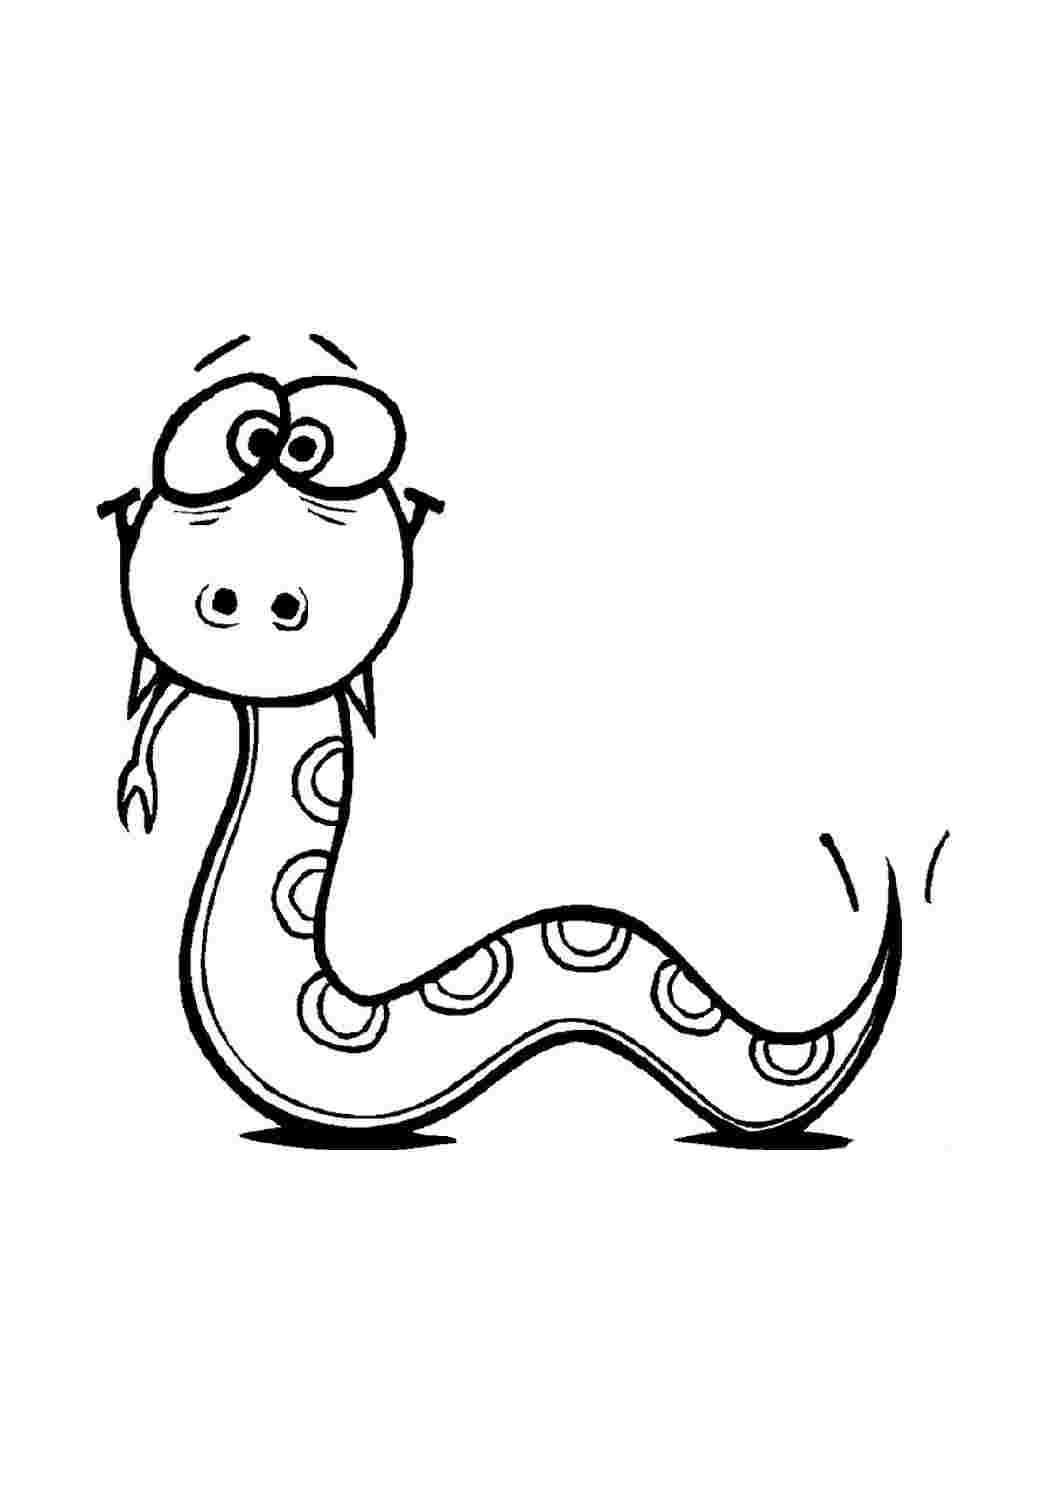 Змея картинка для детей раскраска